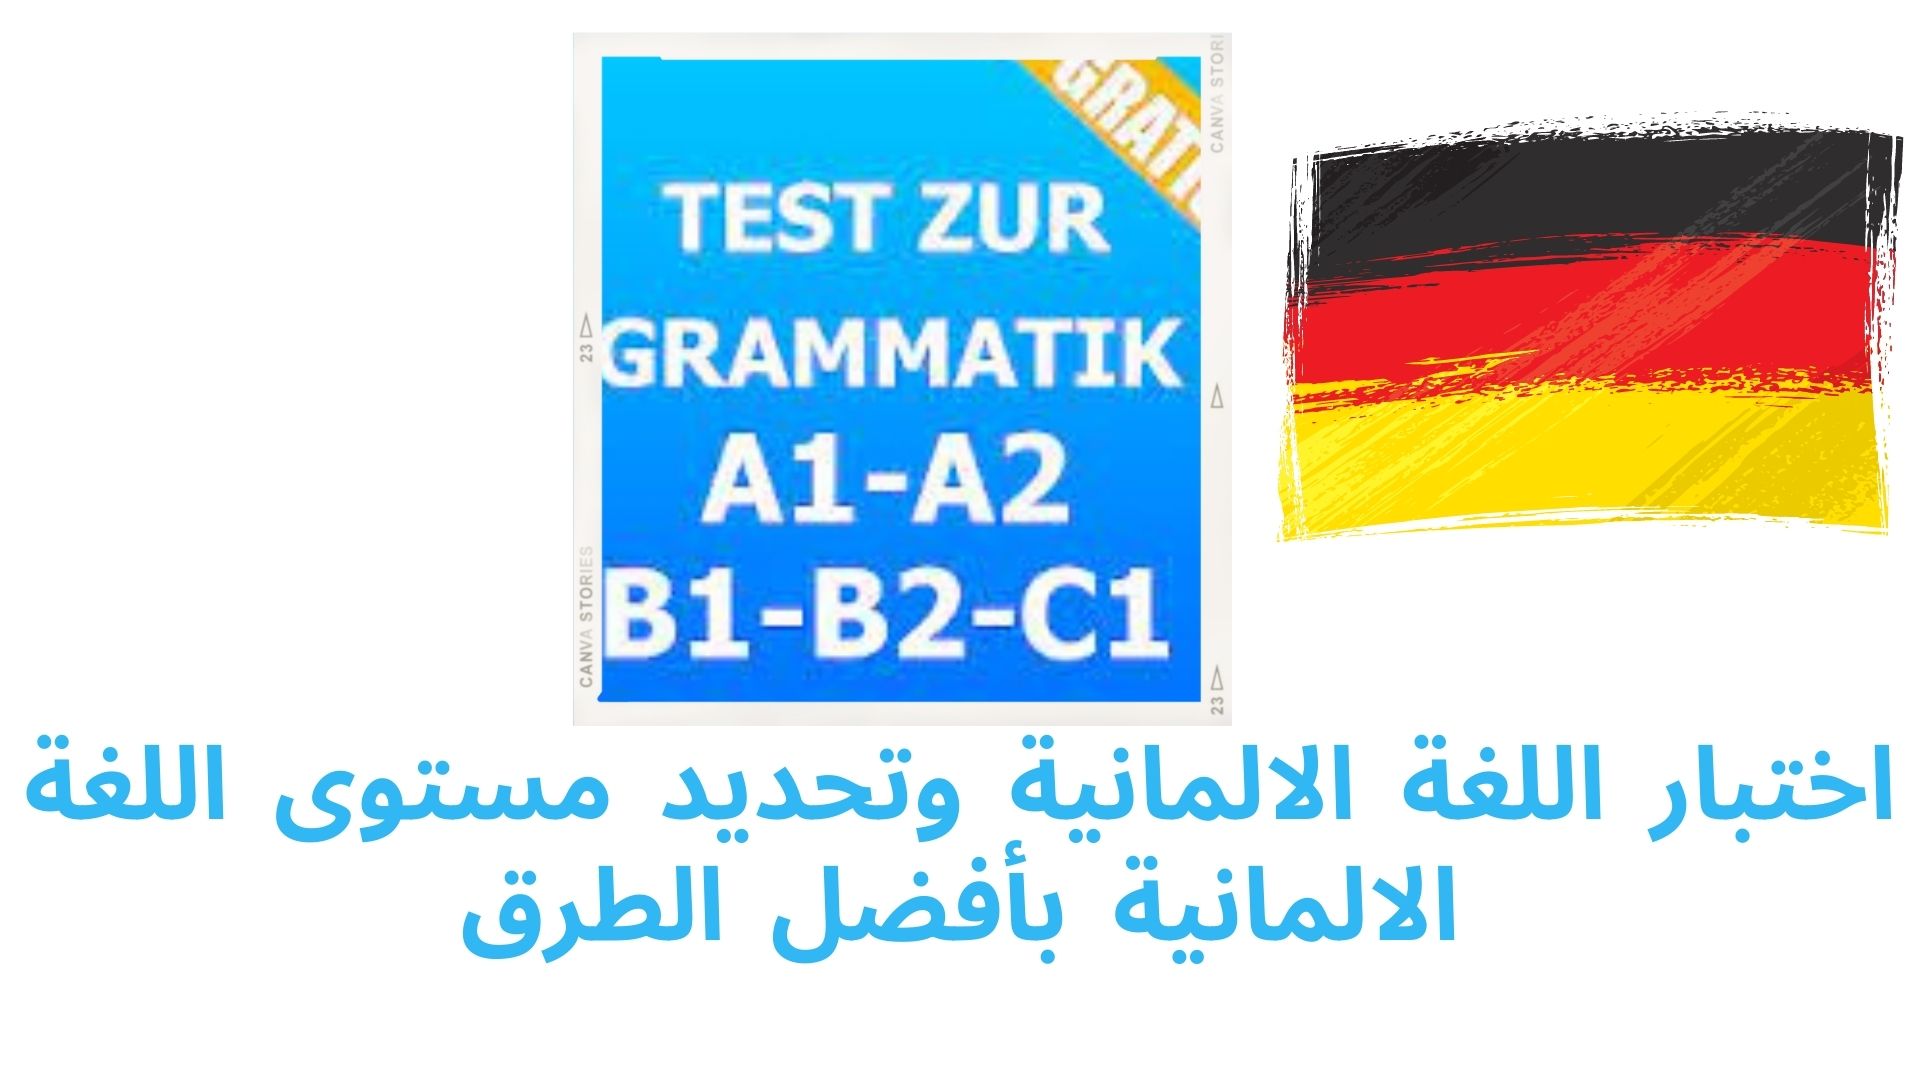 اختبار اللغة الالمانية وتحديد مستوى اللغة الالمانية بأفضل الطرق